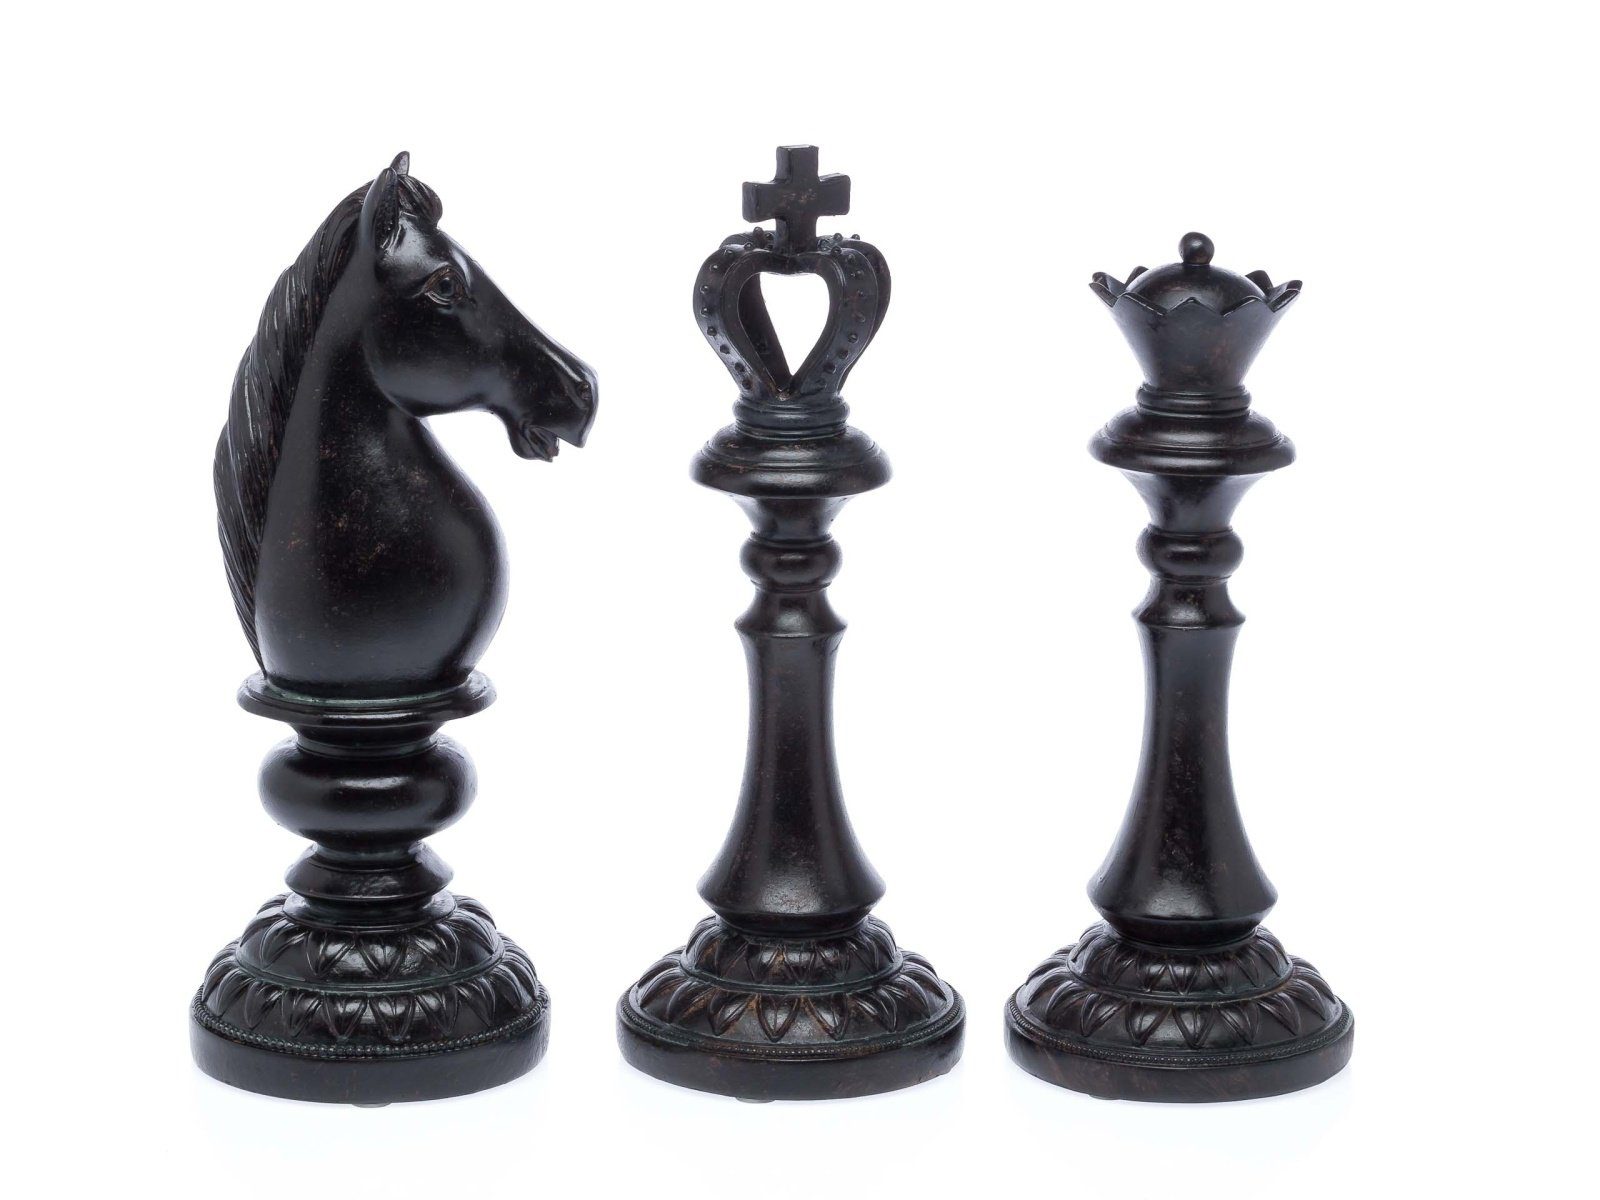 Schach pown Stück stockbild. Bild von einzeln, leistung - 28808539